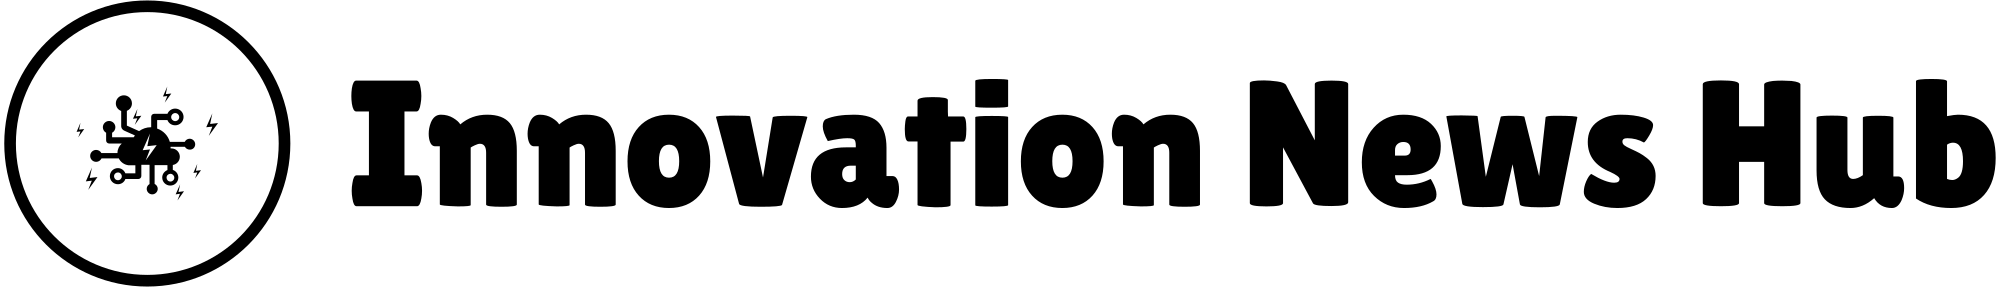 Innovation News Hub